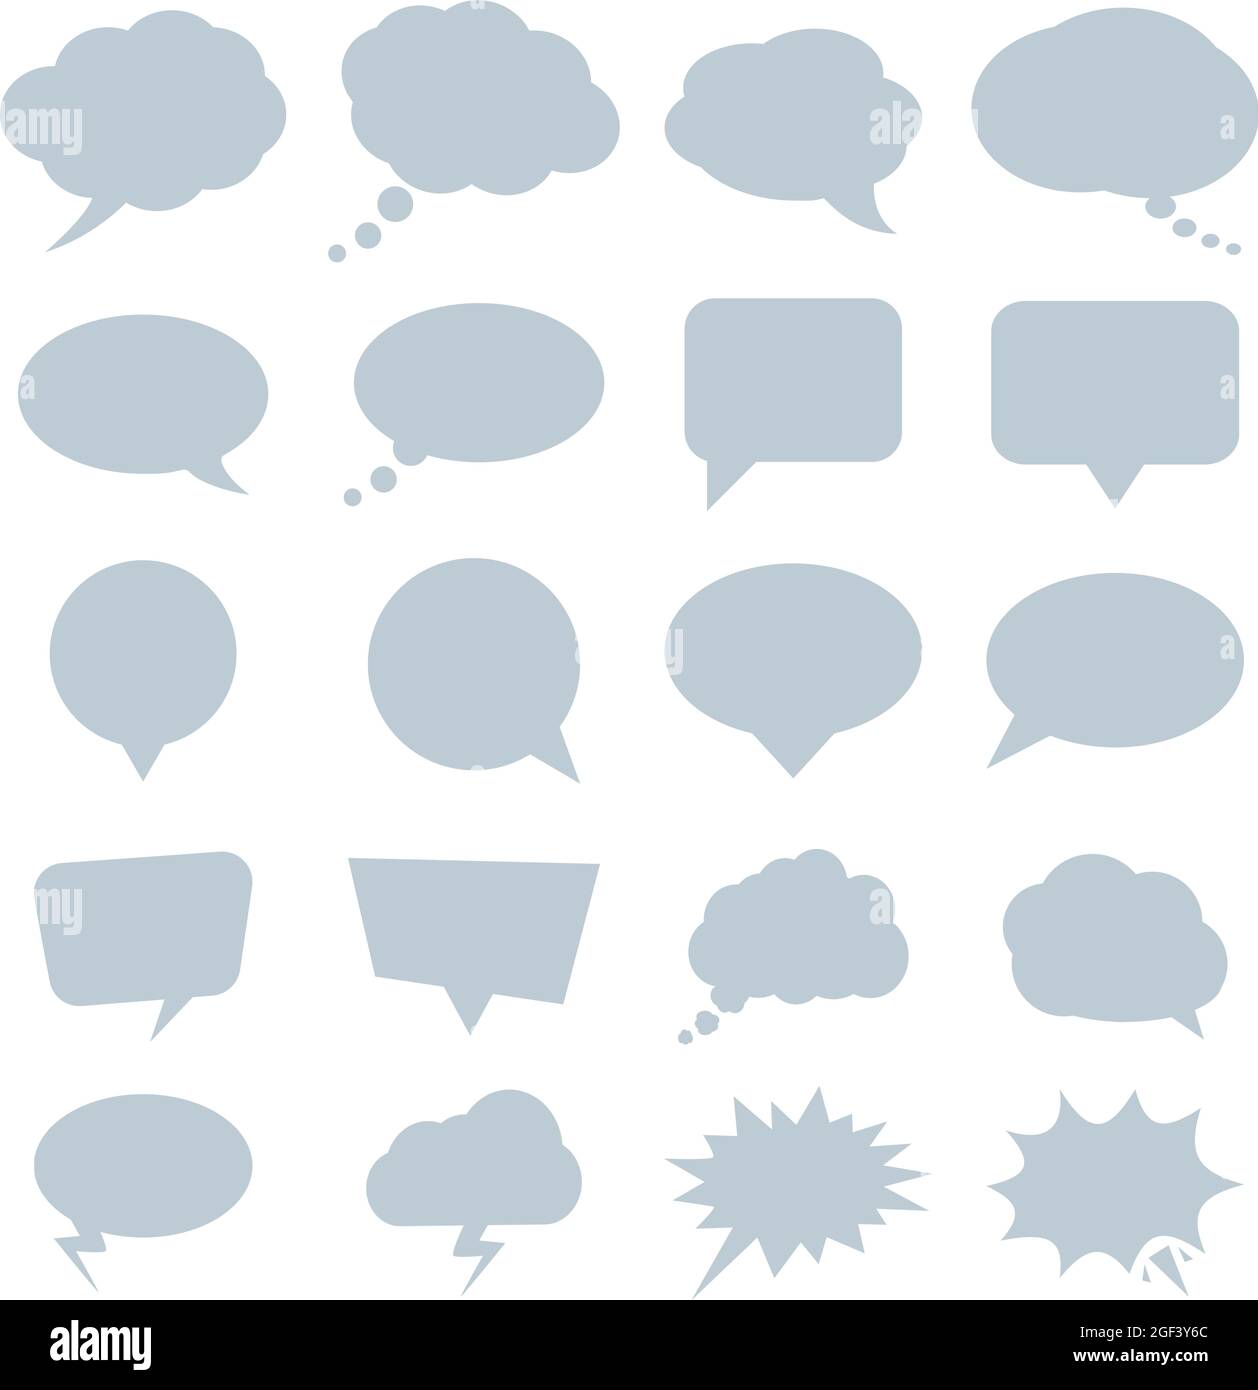 Sammlung von Comic- oder Cartoon-Sprechblasen isoliert auf weißem Hintergrund, Vektorgrafik Symbolsatz Stock Vektor